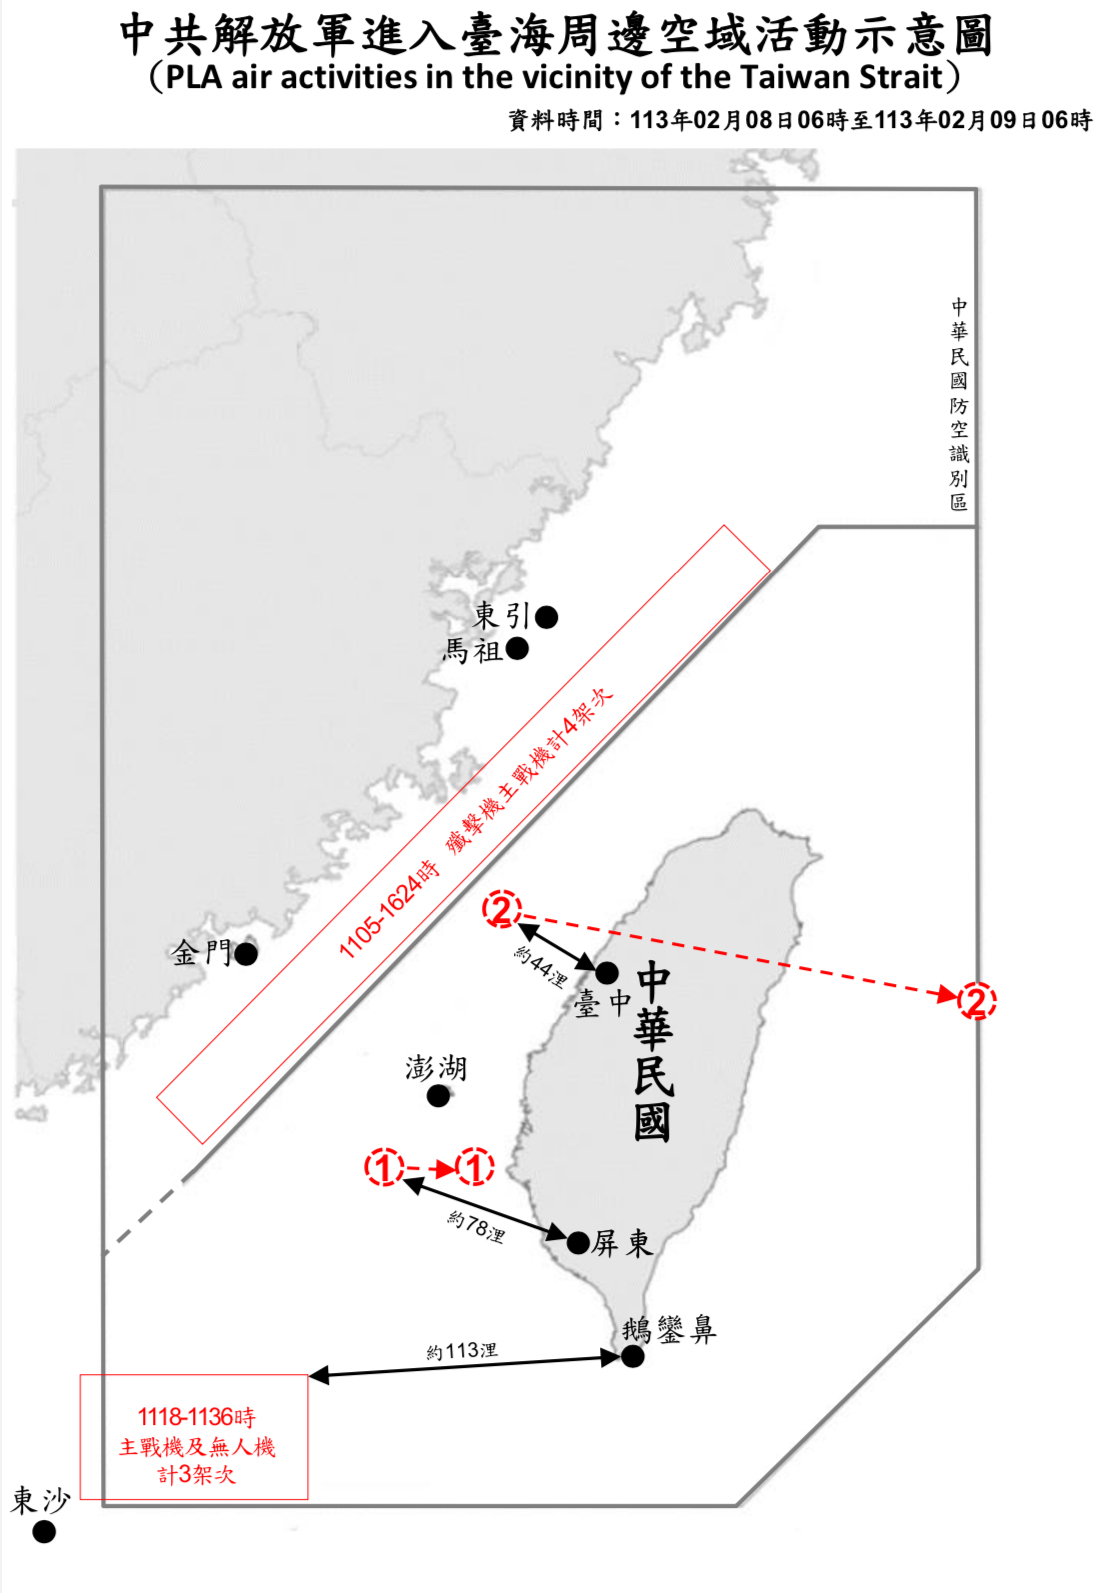 3架次共機進入西南空域 1空飄氣球越台灣本島